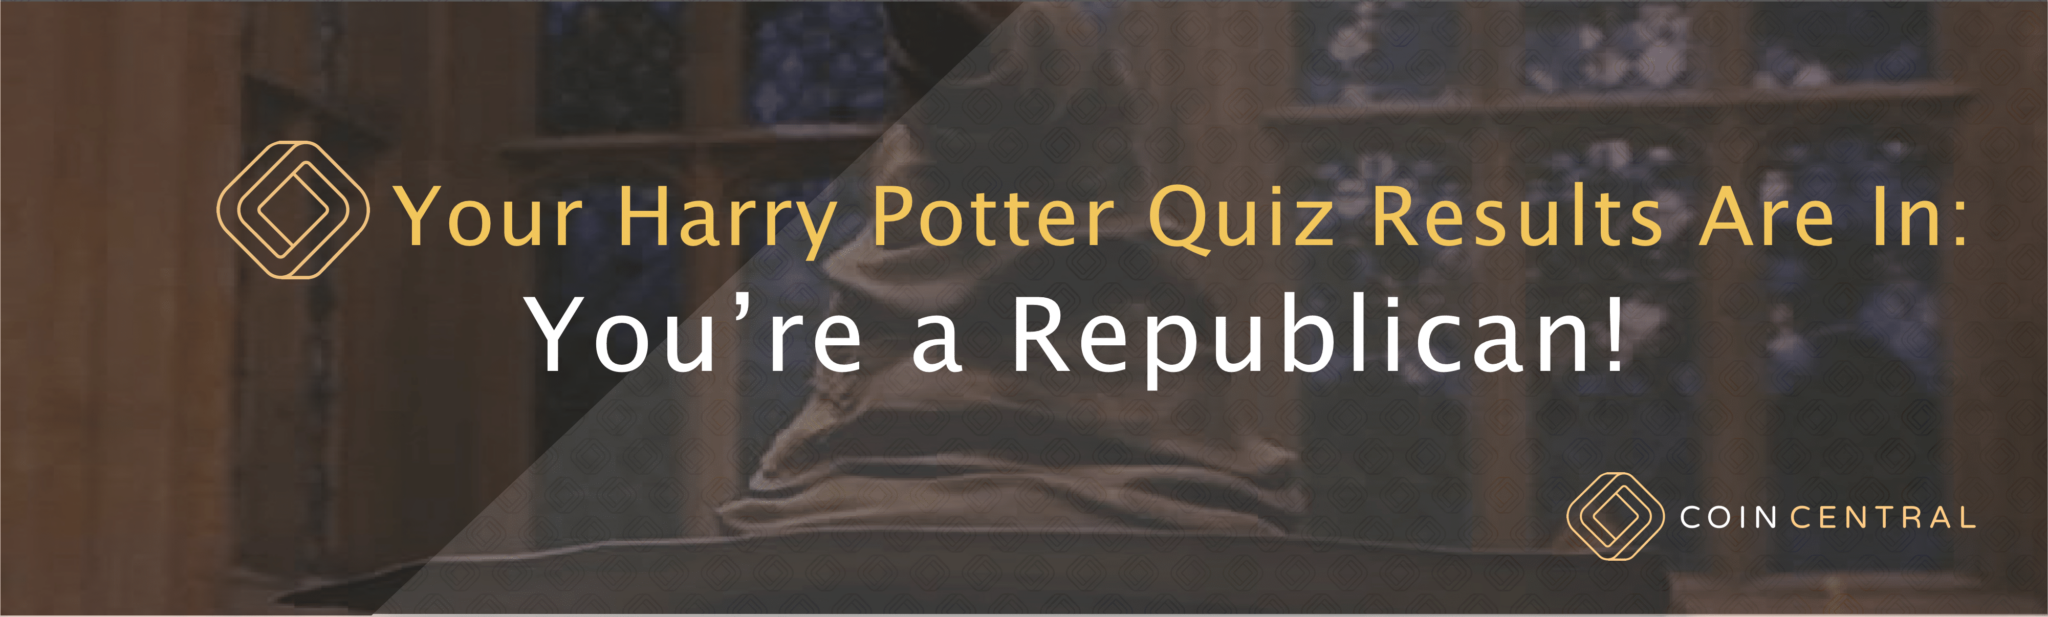 questionário harry potter